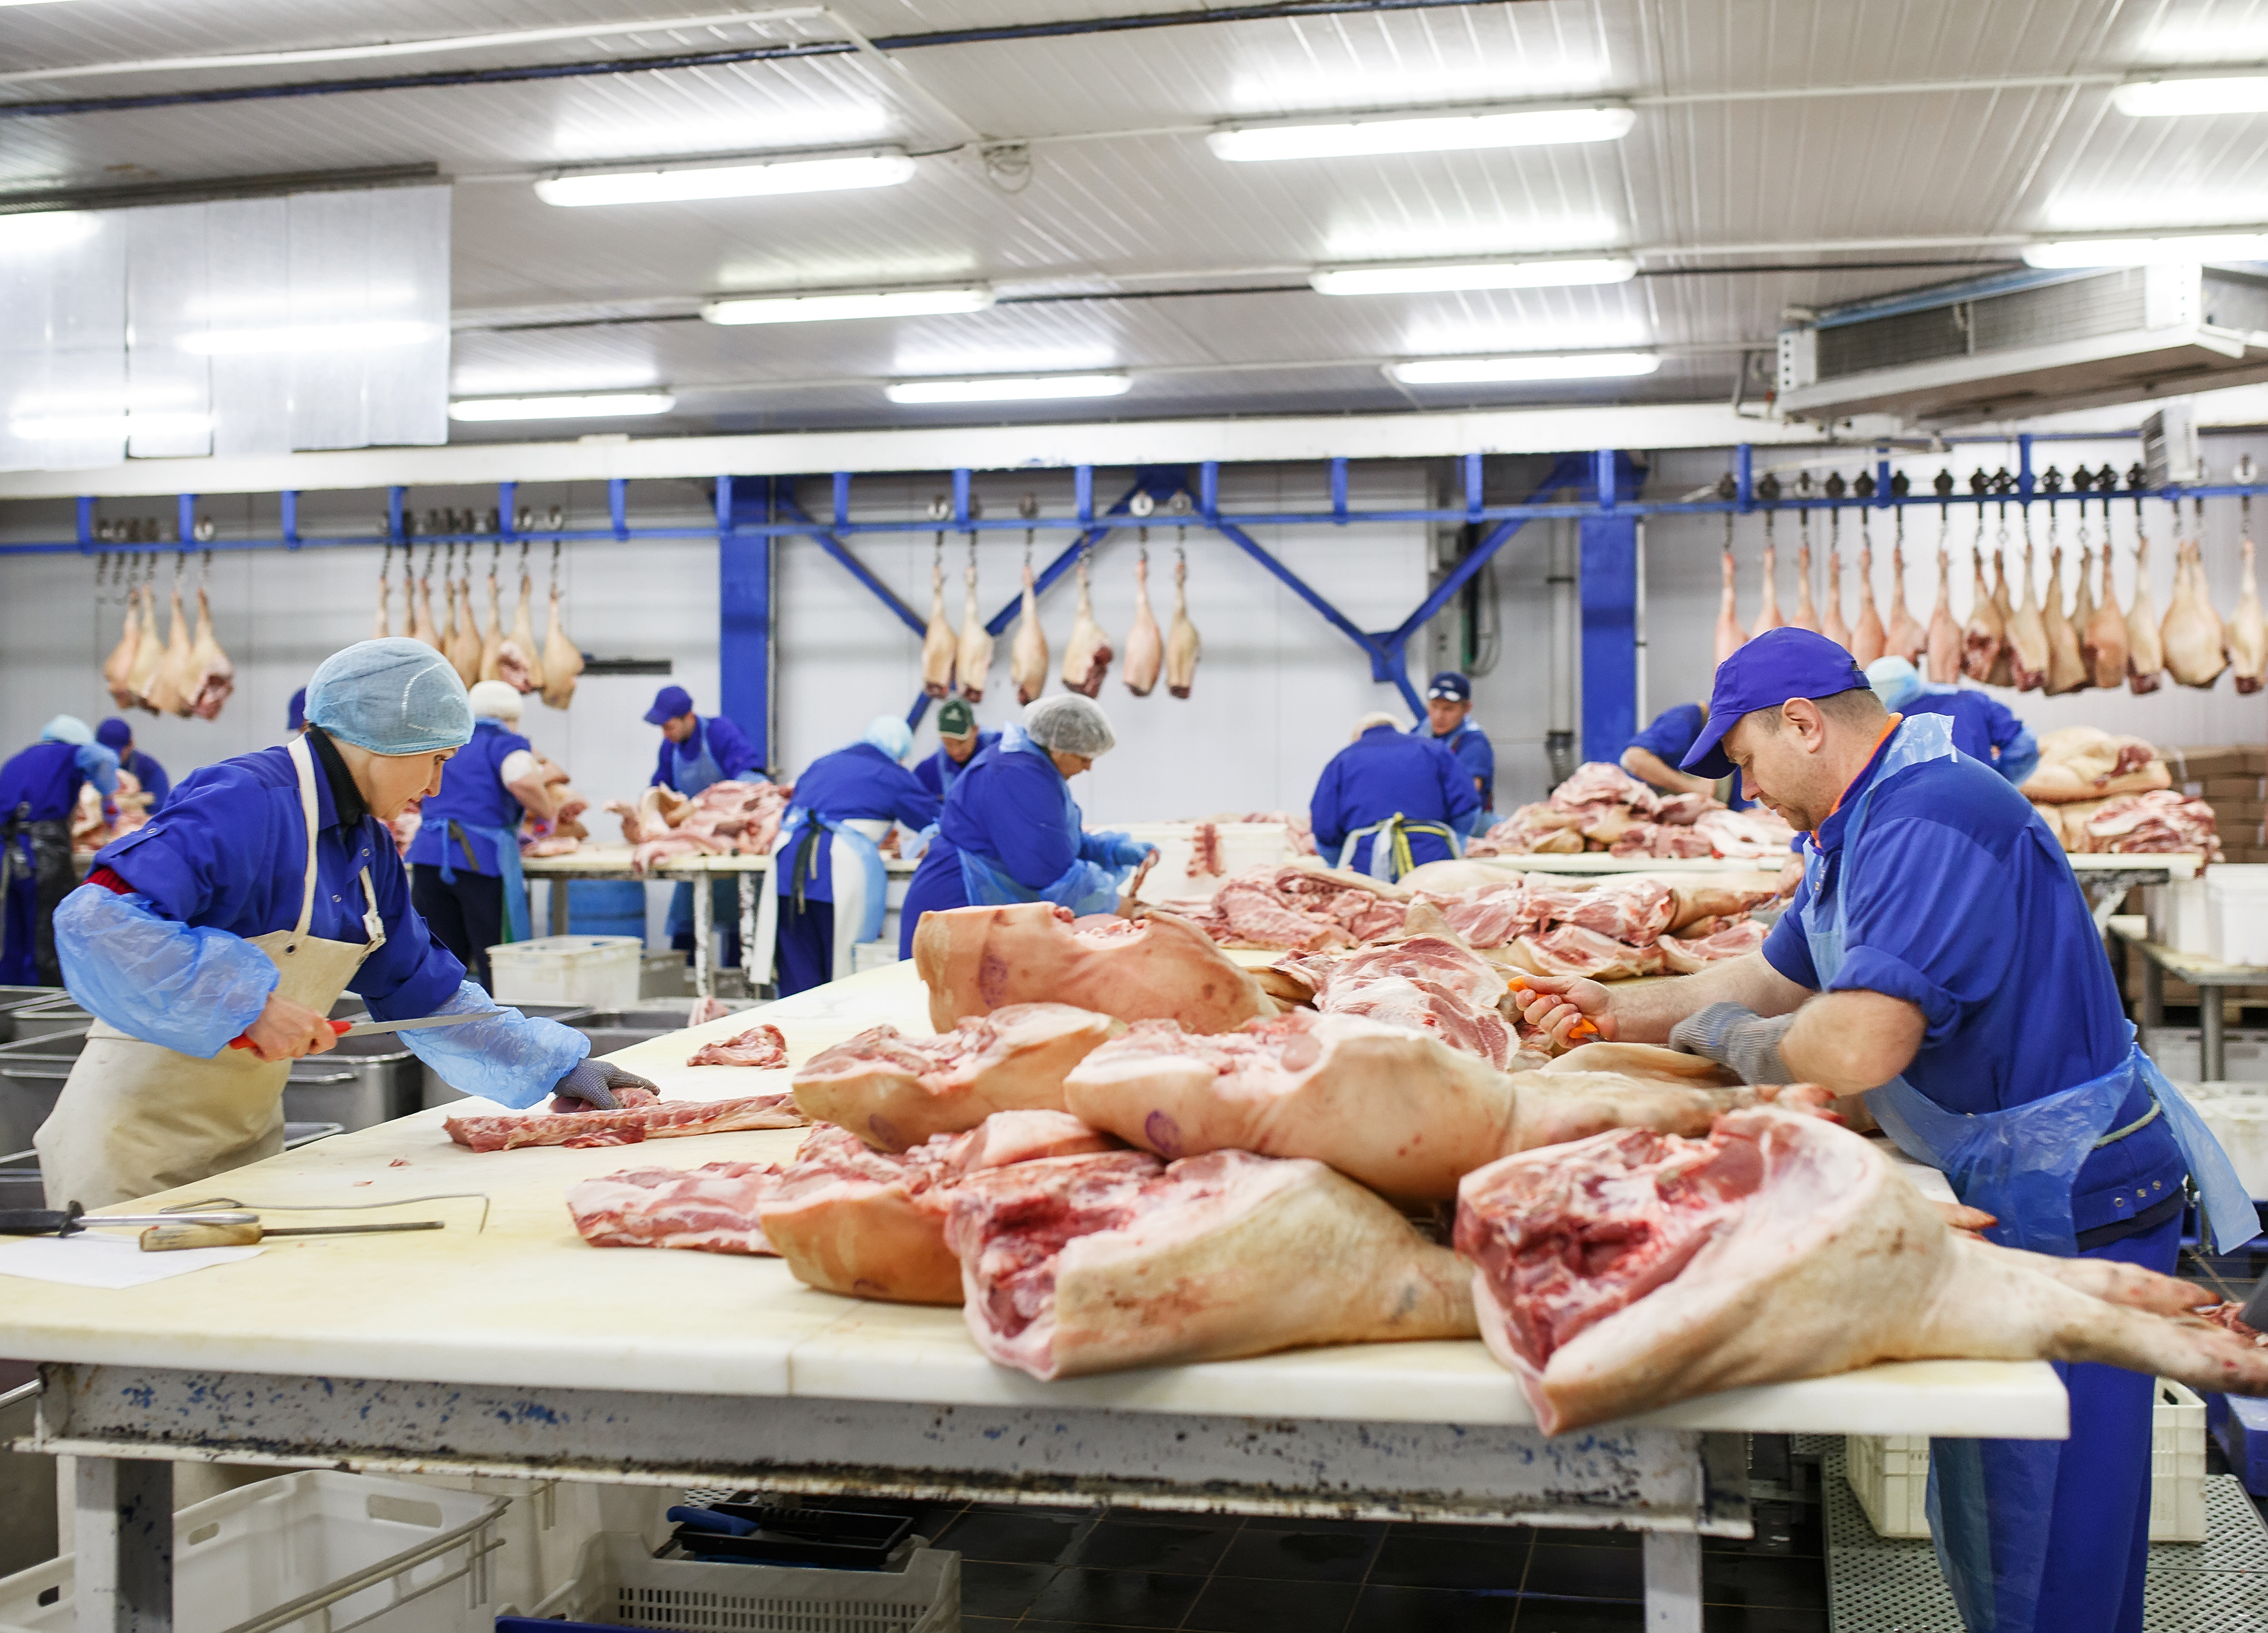 Vleesverwerkingsindustrie: ter beschikking stellen van personeel en onderaanneming vanaf 01-01-2021 verboden